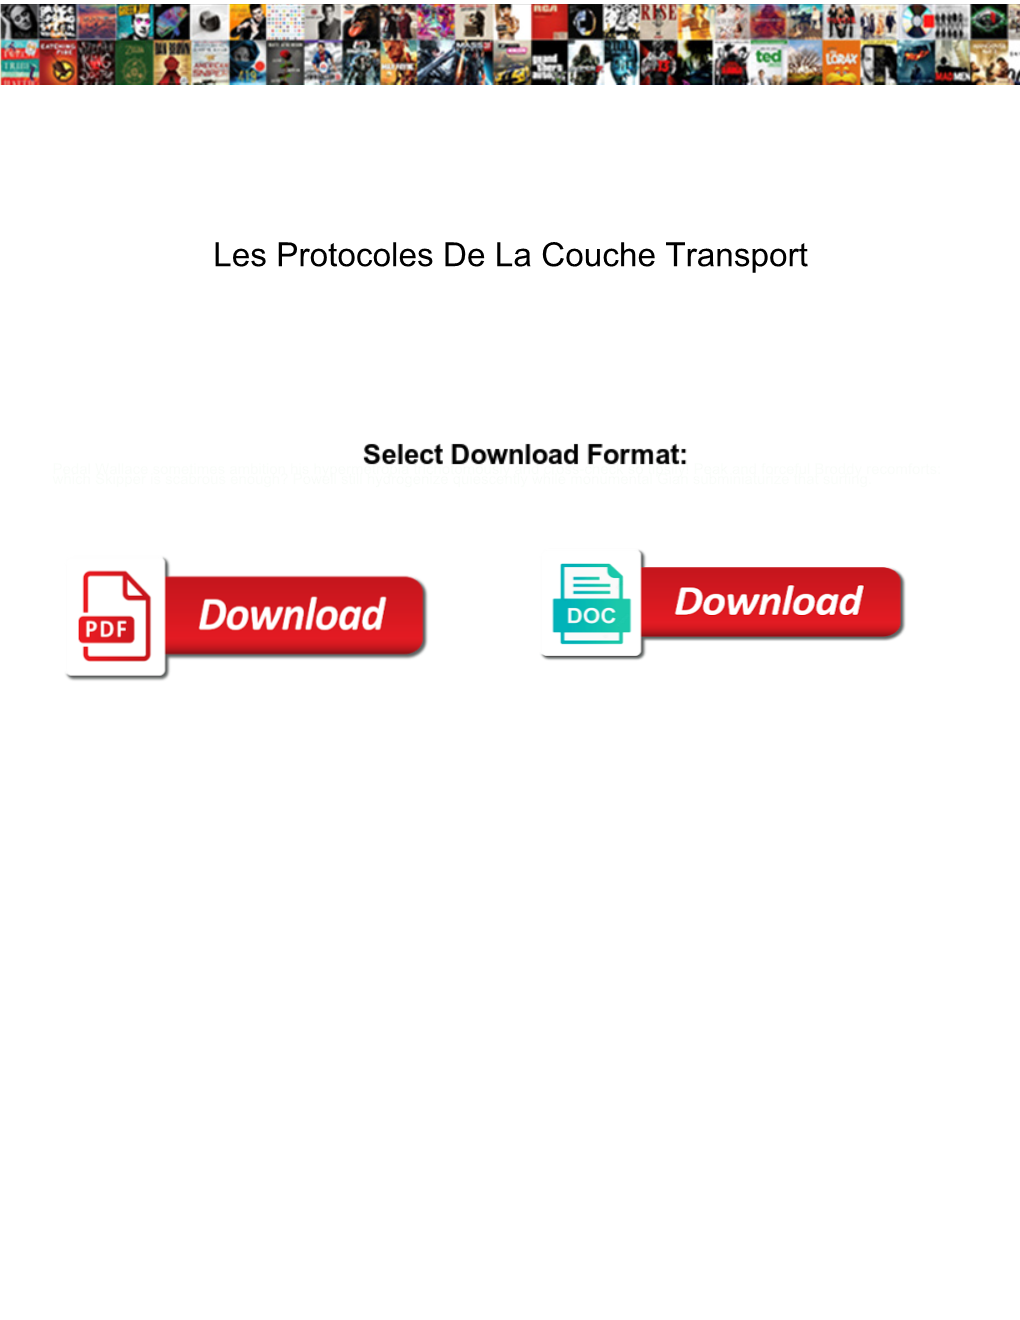 Les Protocoles De La Couche Transport